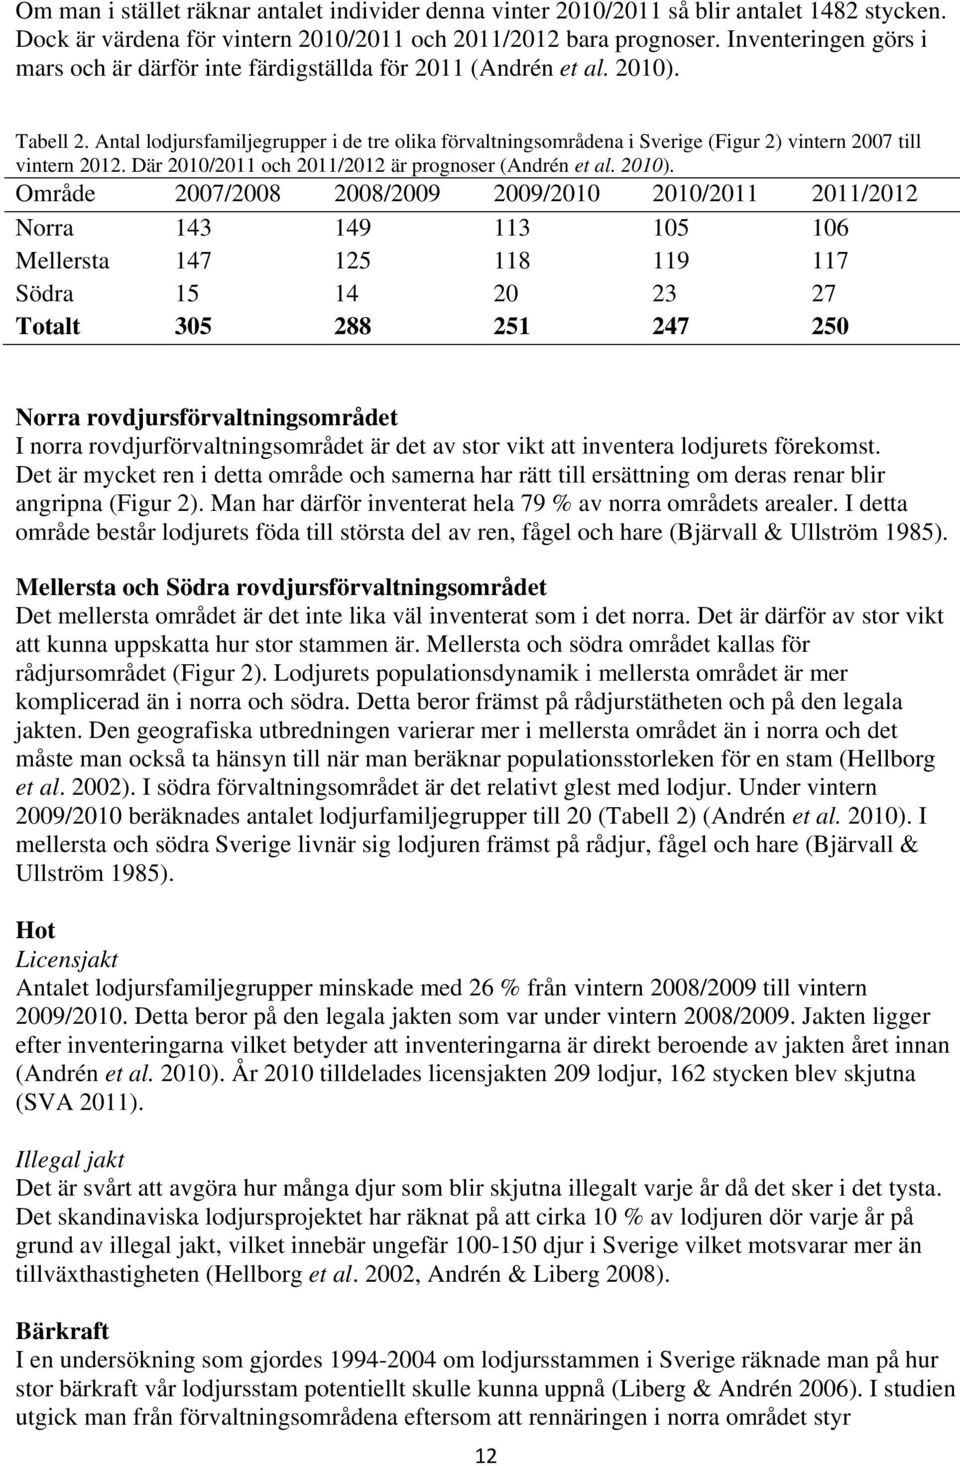 Antal lodjursfamiljegrupper i de tre olika förvaltningsområdena i Sverige (Figur 2) vintern 2007 till vintern 2012. Där 2010/2011 och 2011/2012 är prognoser (Andrén et al. 2010).